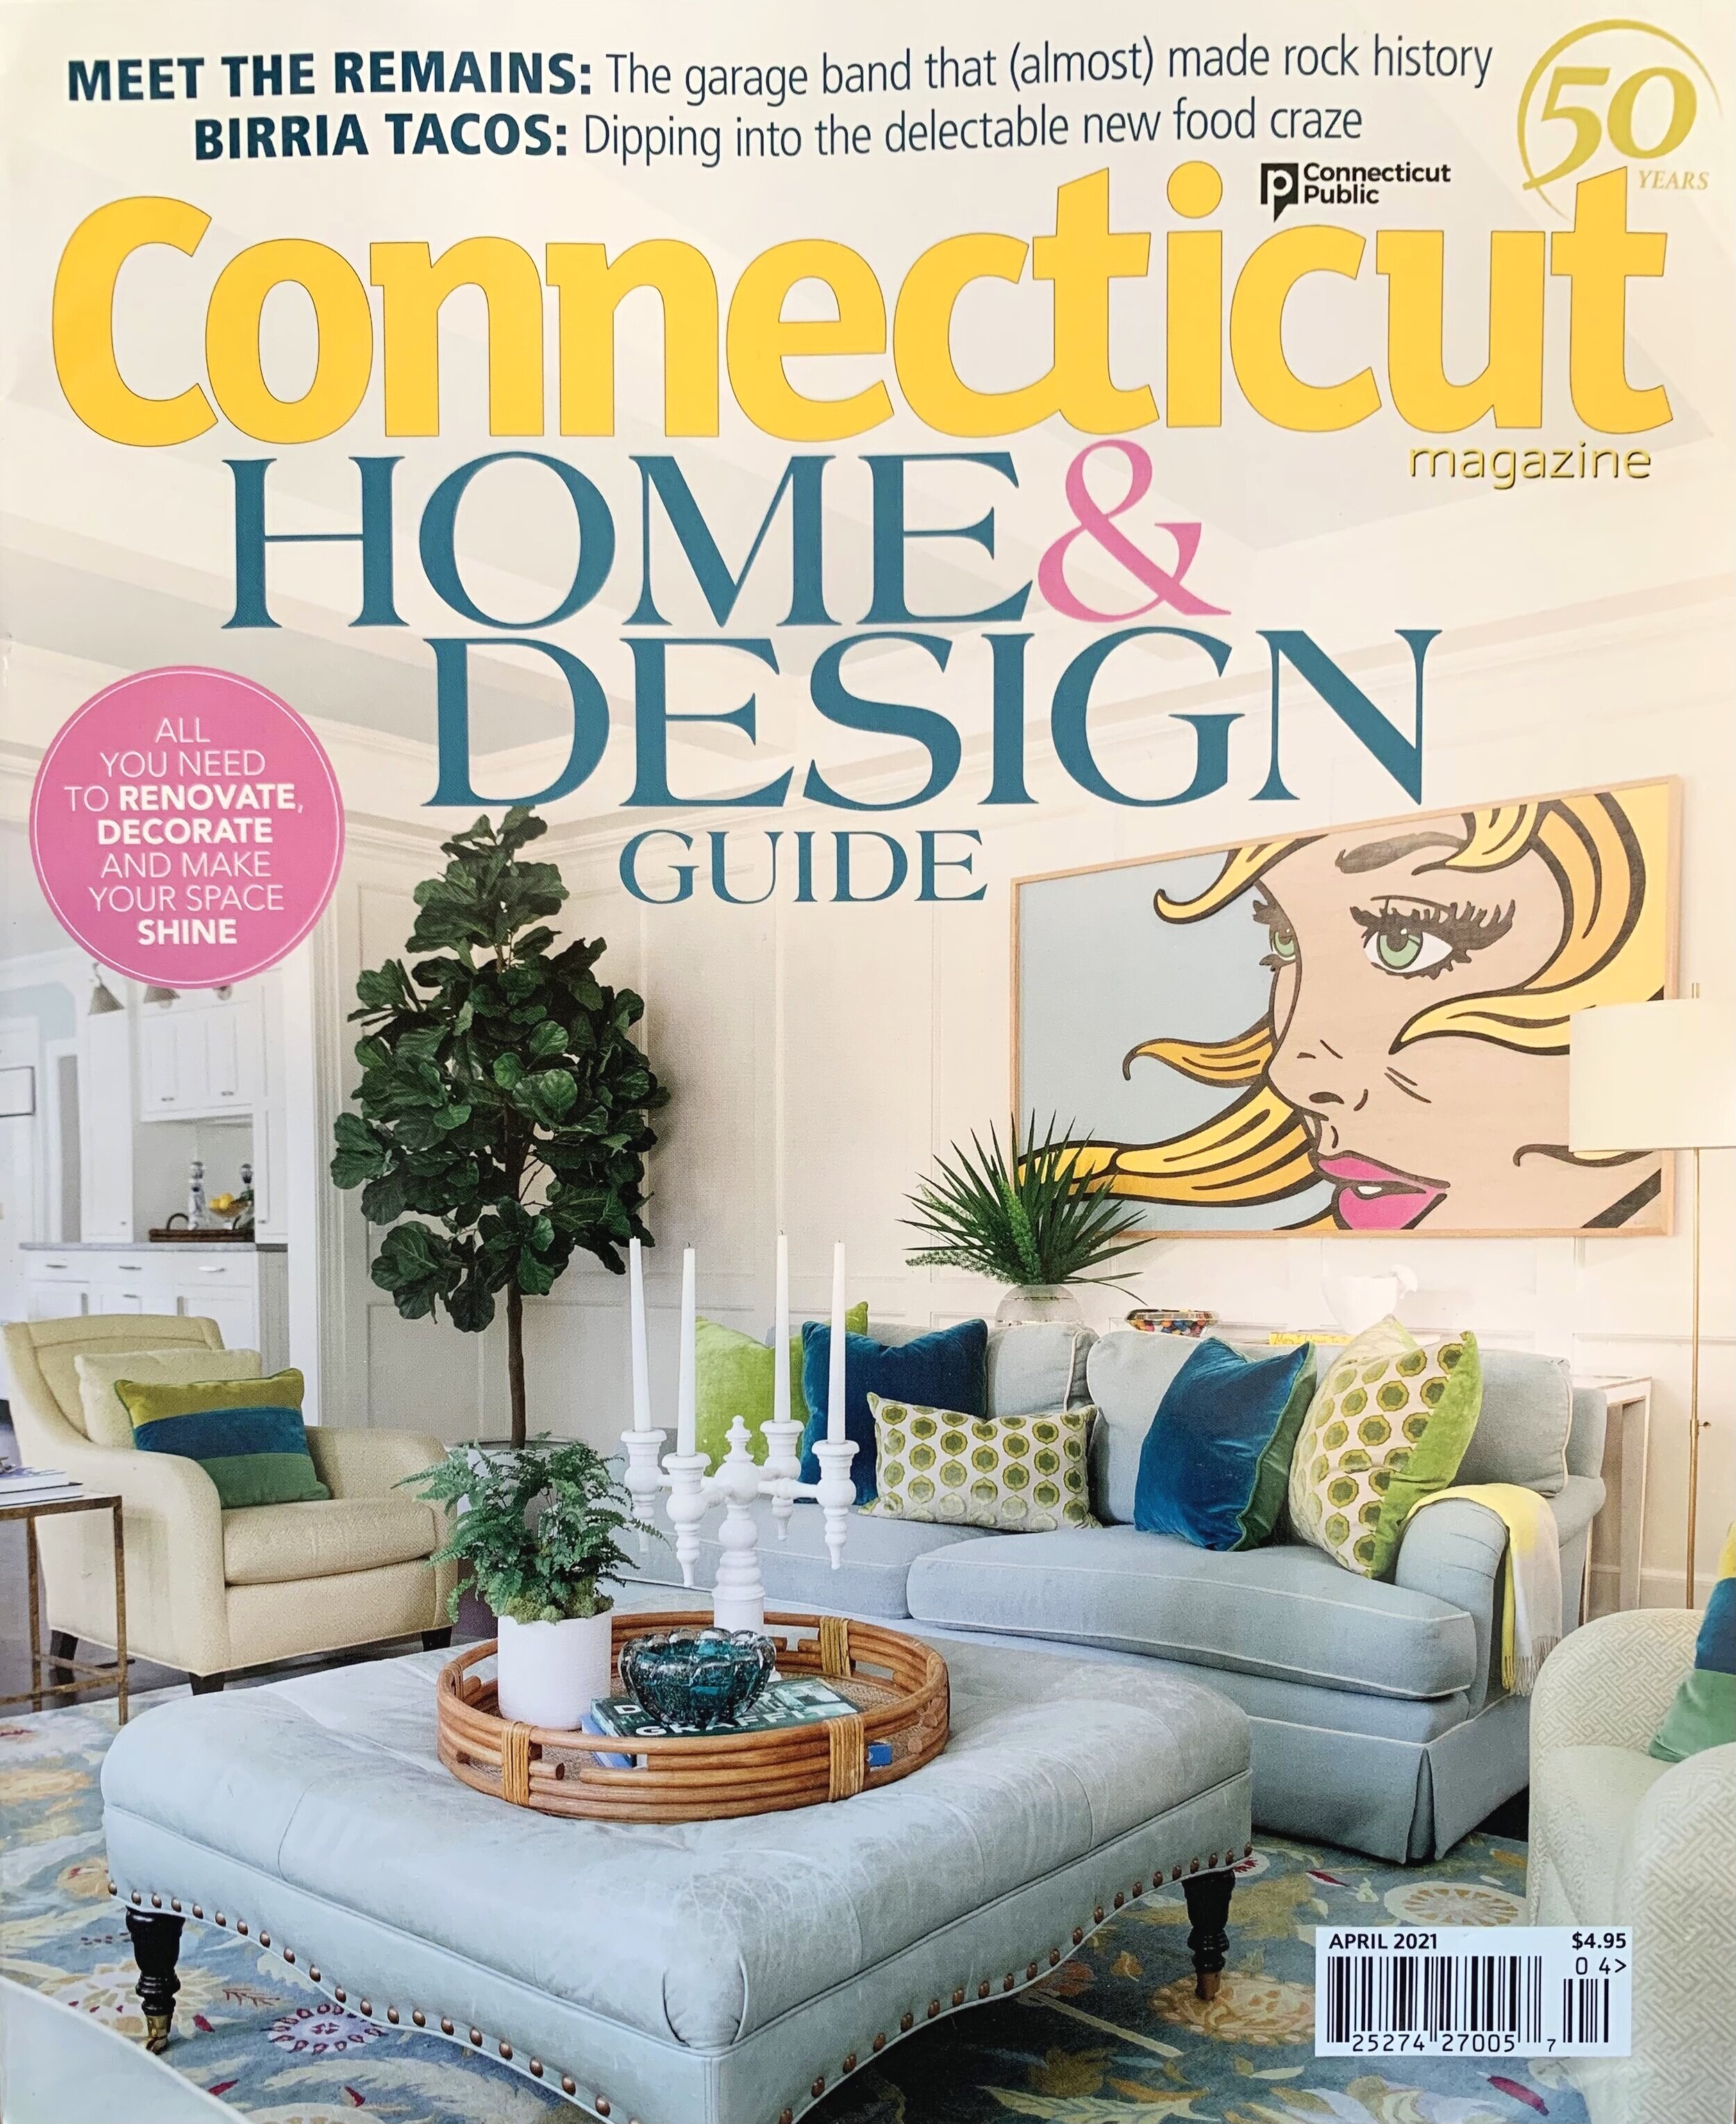 Connecticut Magazine April 2021